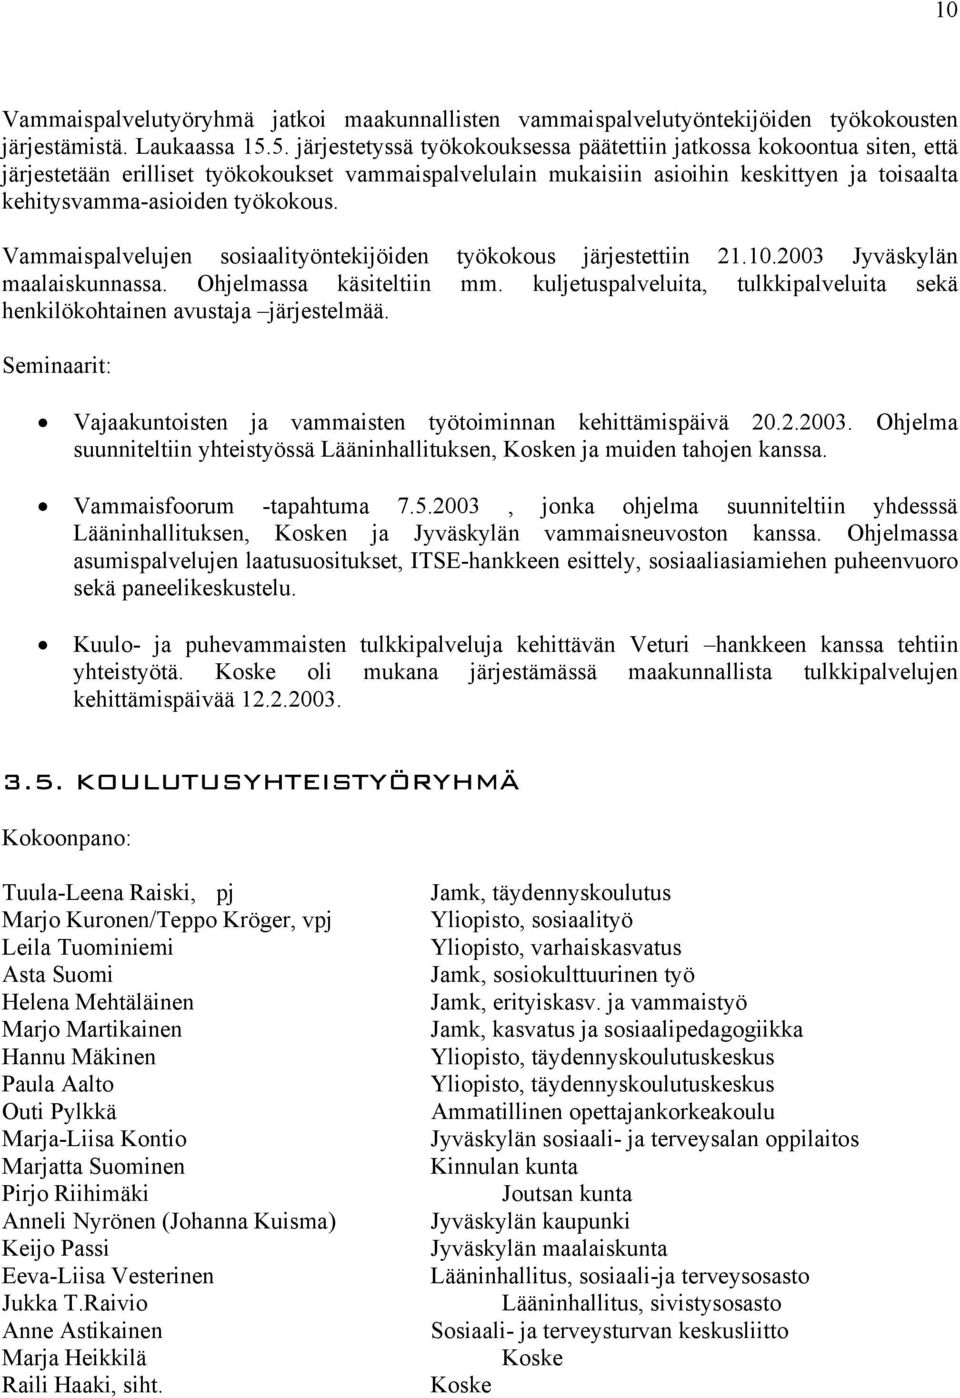 työkokous. Vammaispalvelujen sosiaalityöntekijöiden työkokous järjestettiin 21.10.2003 Jyväskylän maalaiskunnassa. Ohjelmassa käsiteltiin mm.